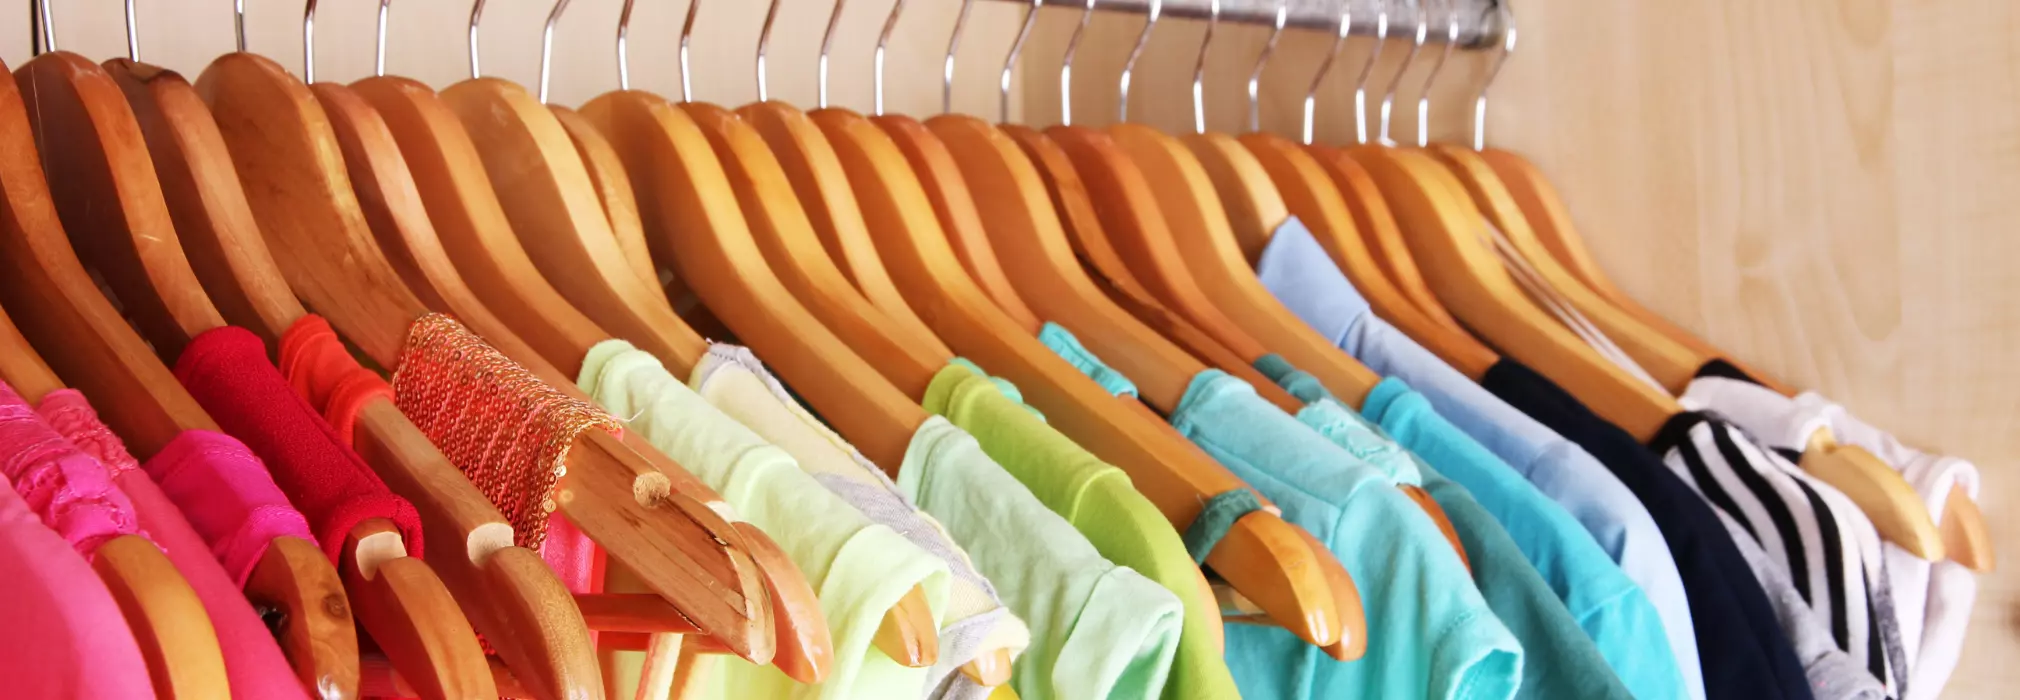 Ordnung im Kleiderschrank: Praktische Tipps und clevere Lösungen